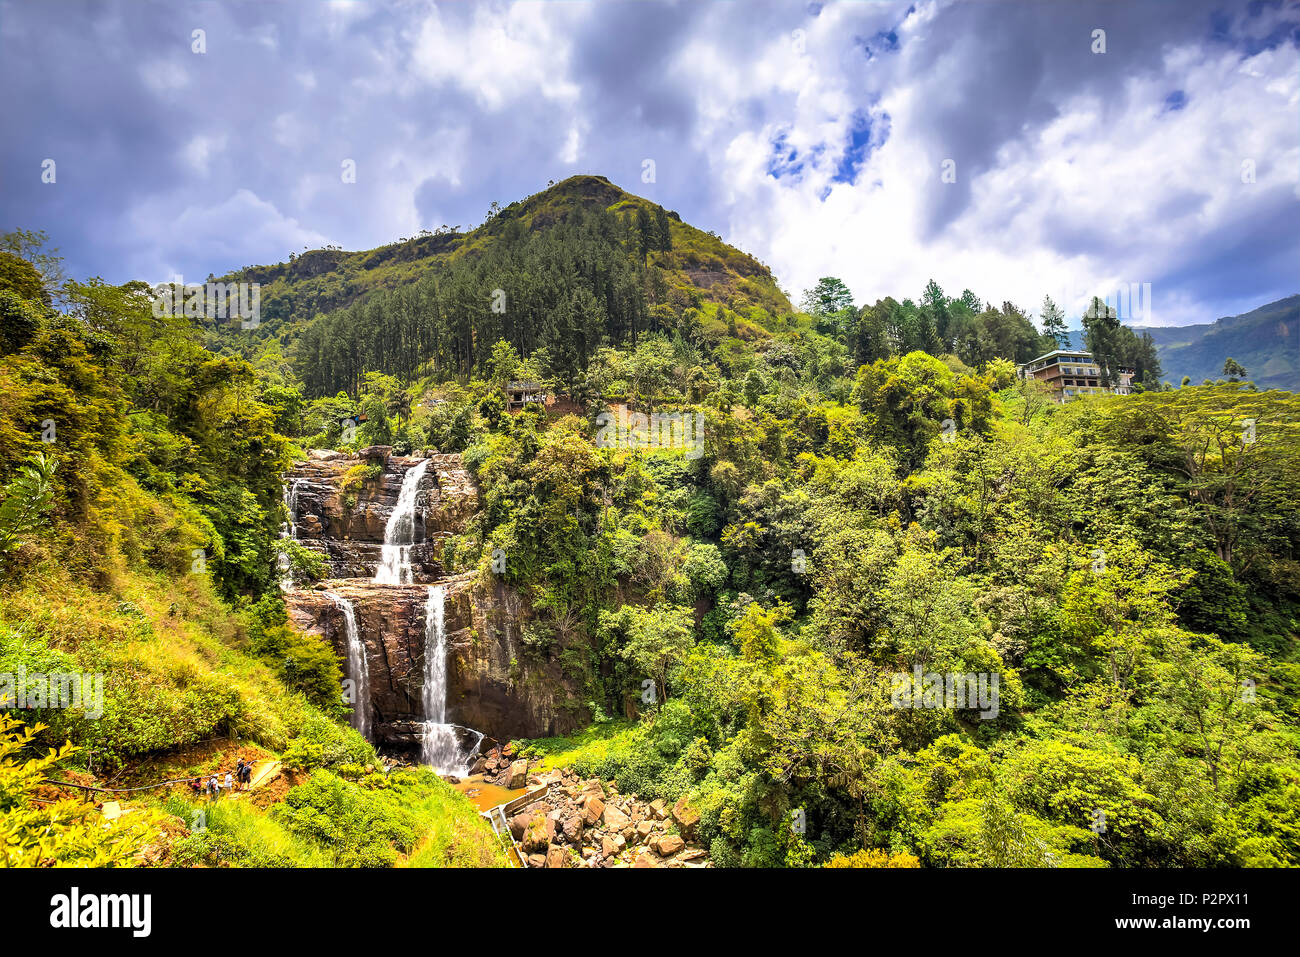 Blick auf ein Dschungel, Wasserfall, genannt Ramboda, zwischen Teeplantagen in Sri Lanka. Stockfoto